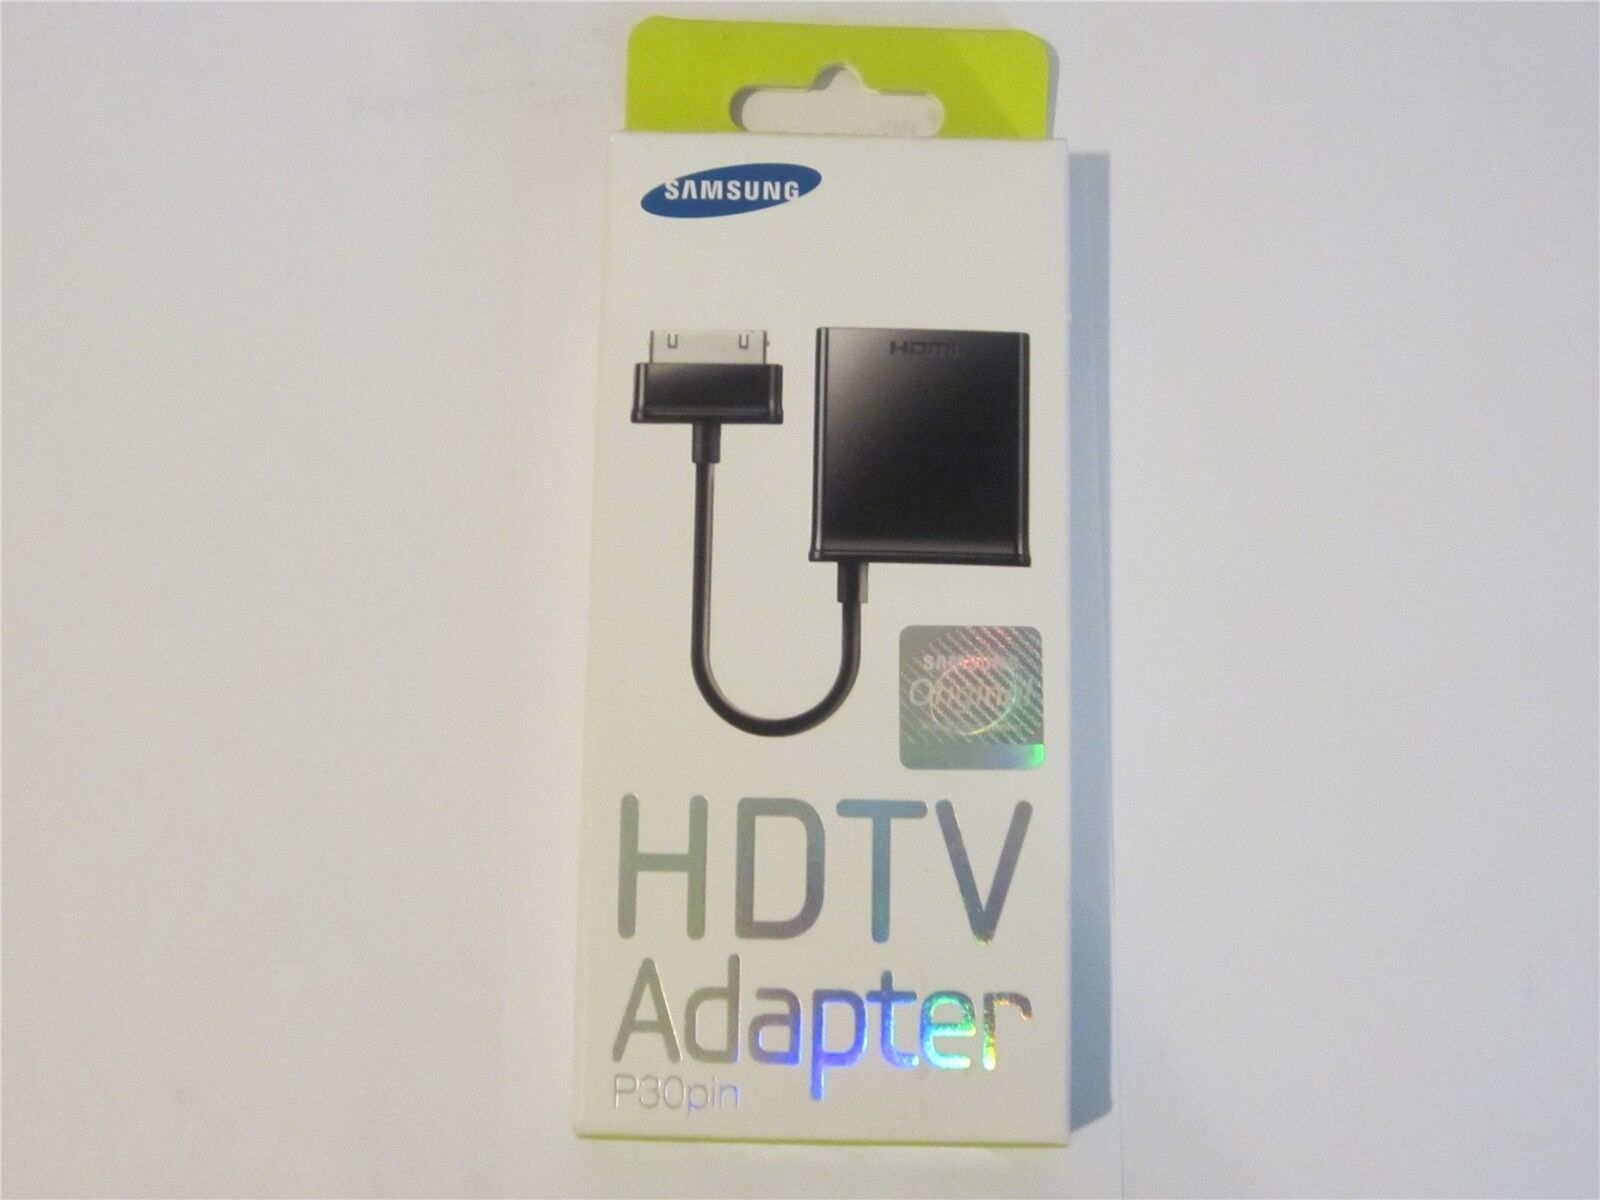 Samsung Hdtv Adapter For 10.1 Galaxy Tablet